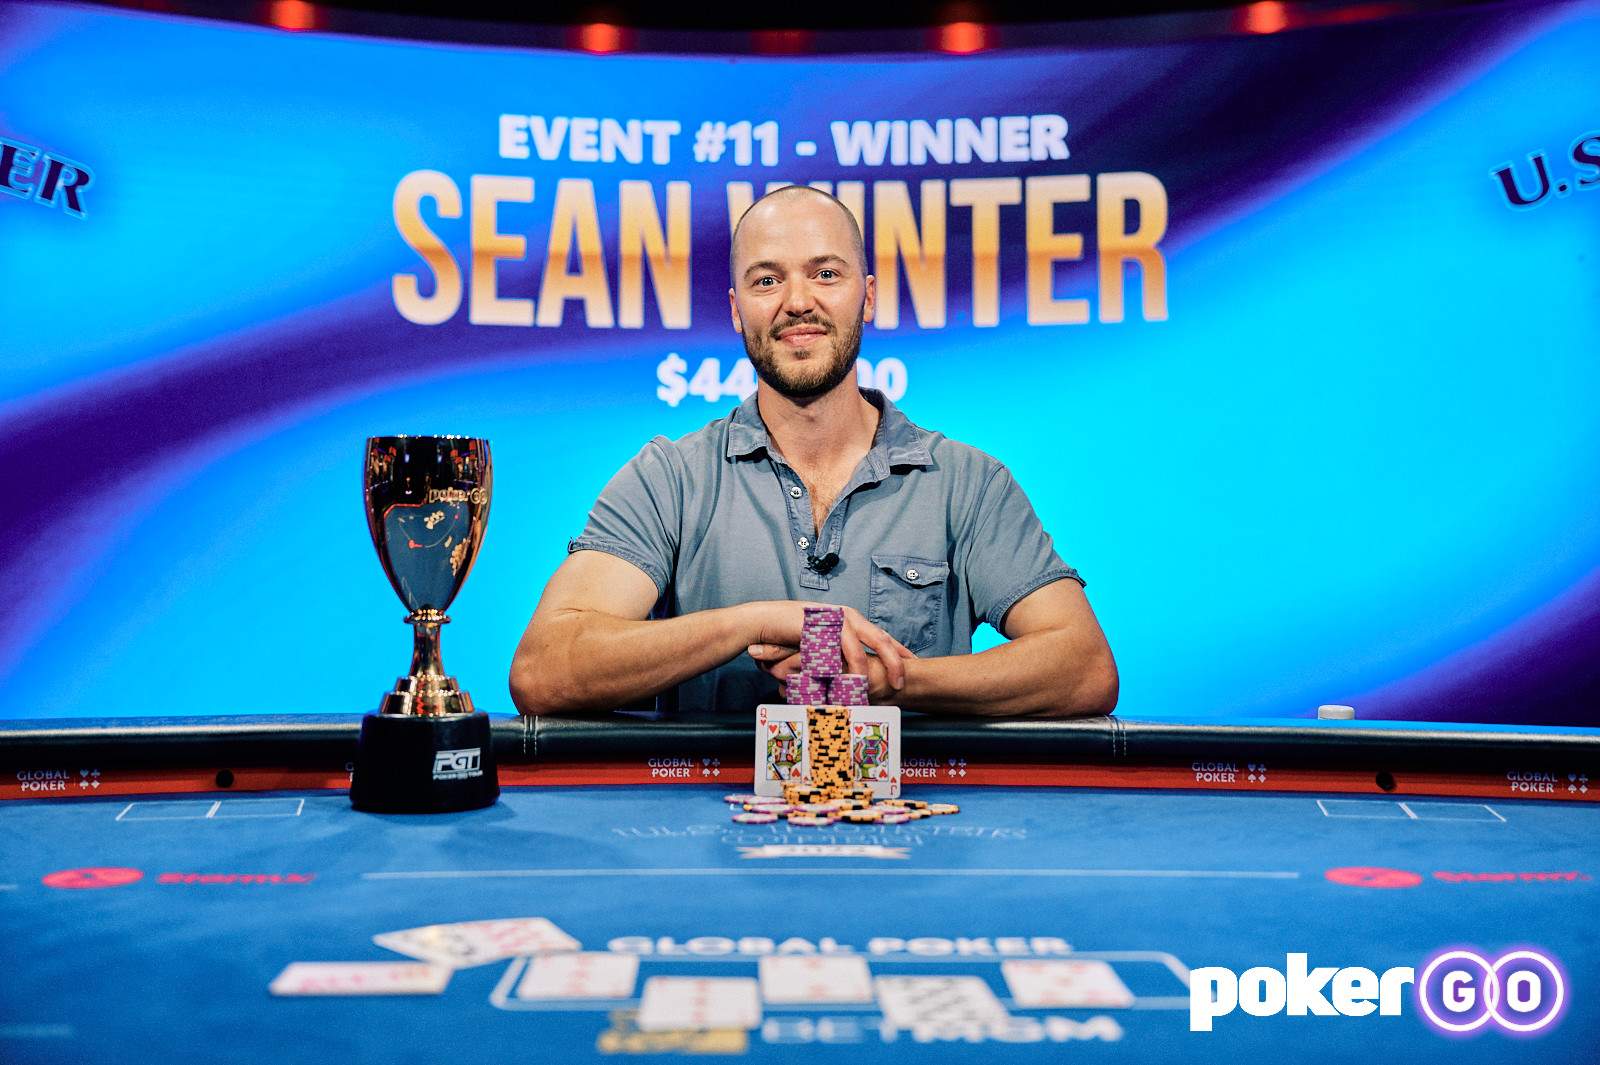 Sean Winter Wins U.S. Poker Open Event #11 for $440,000